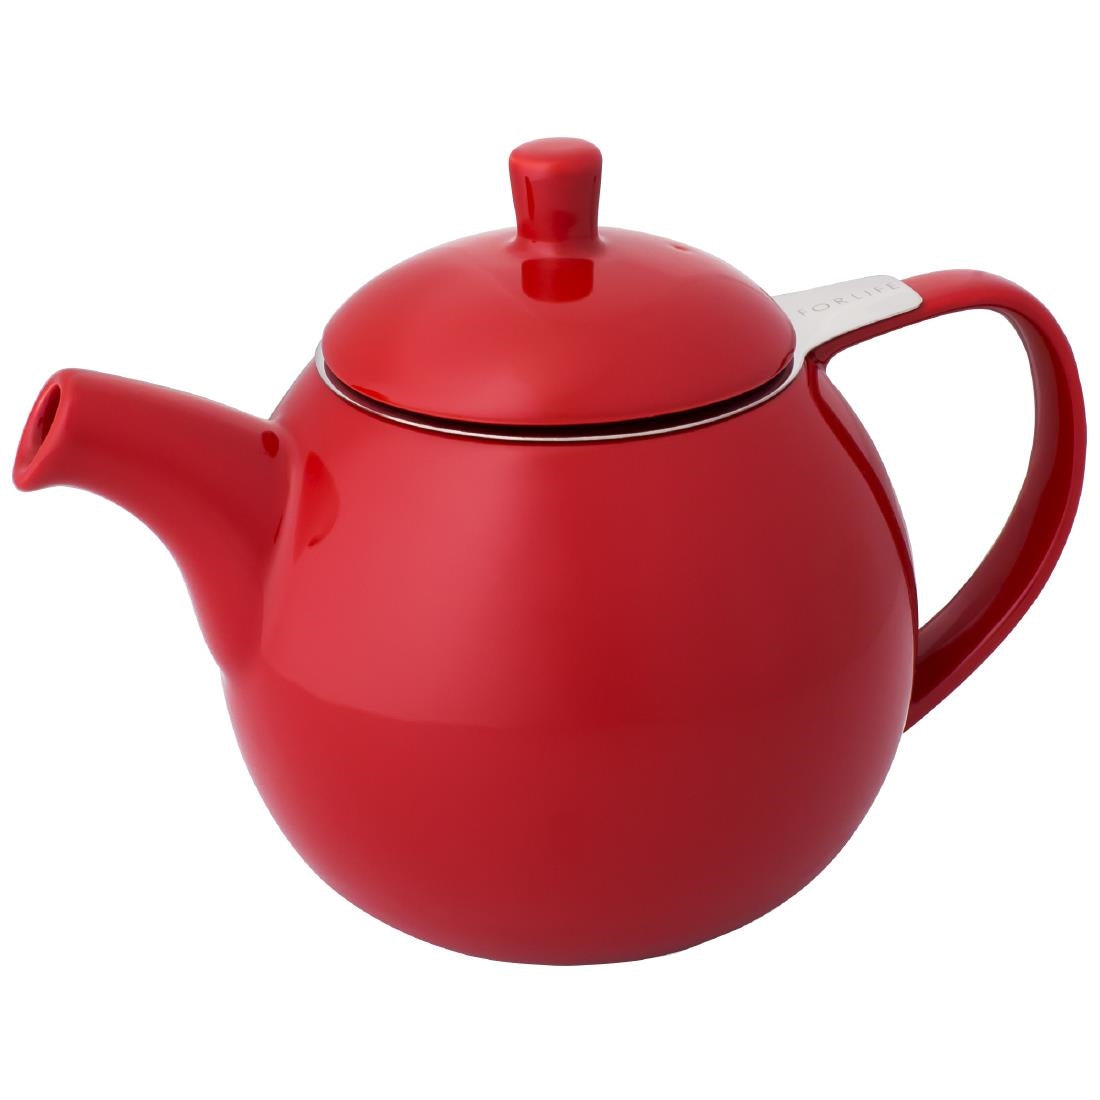 DX487 Forlife Red Curve Teapot 24oz